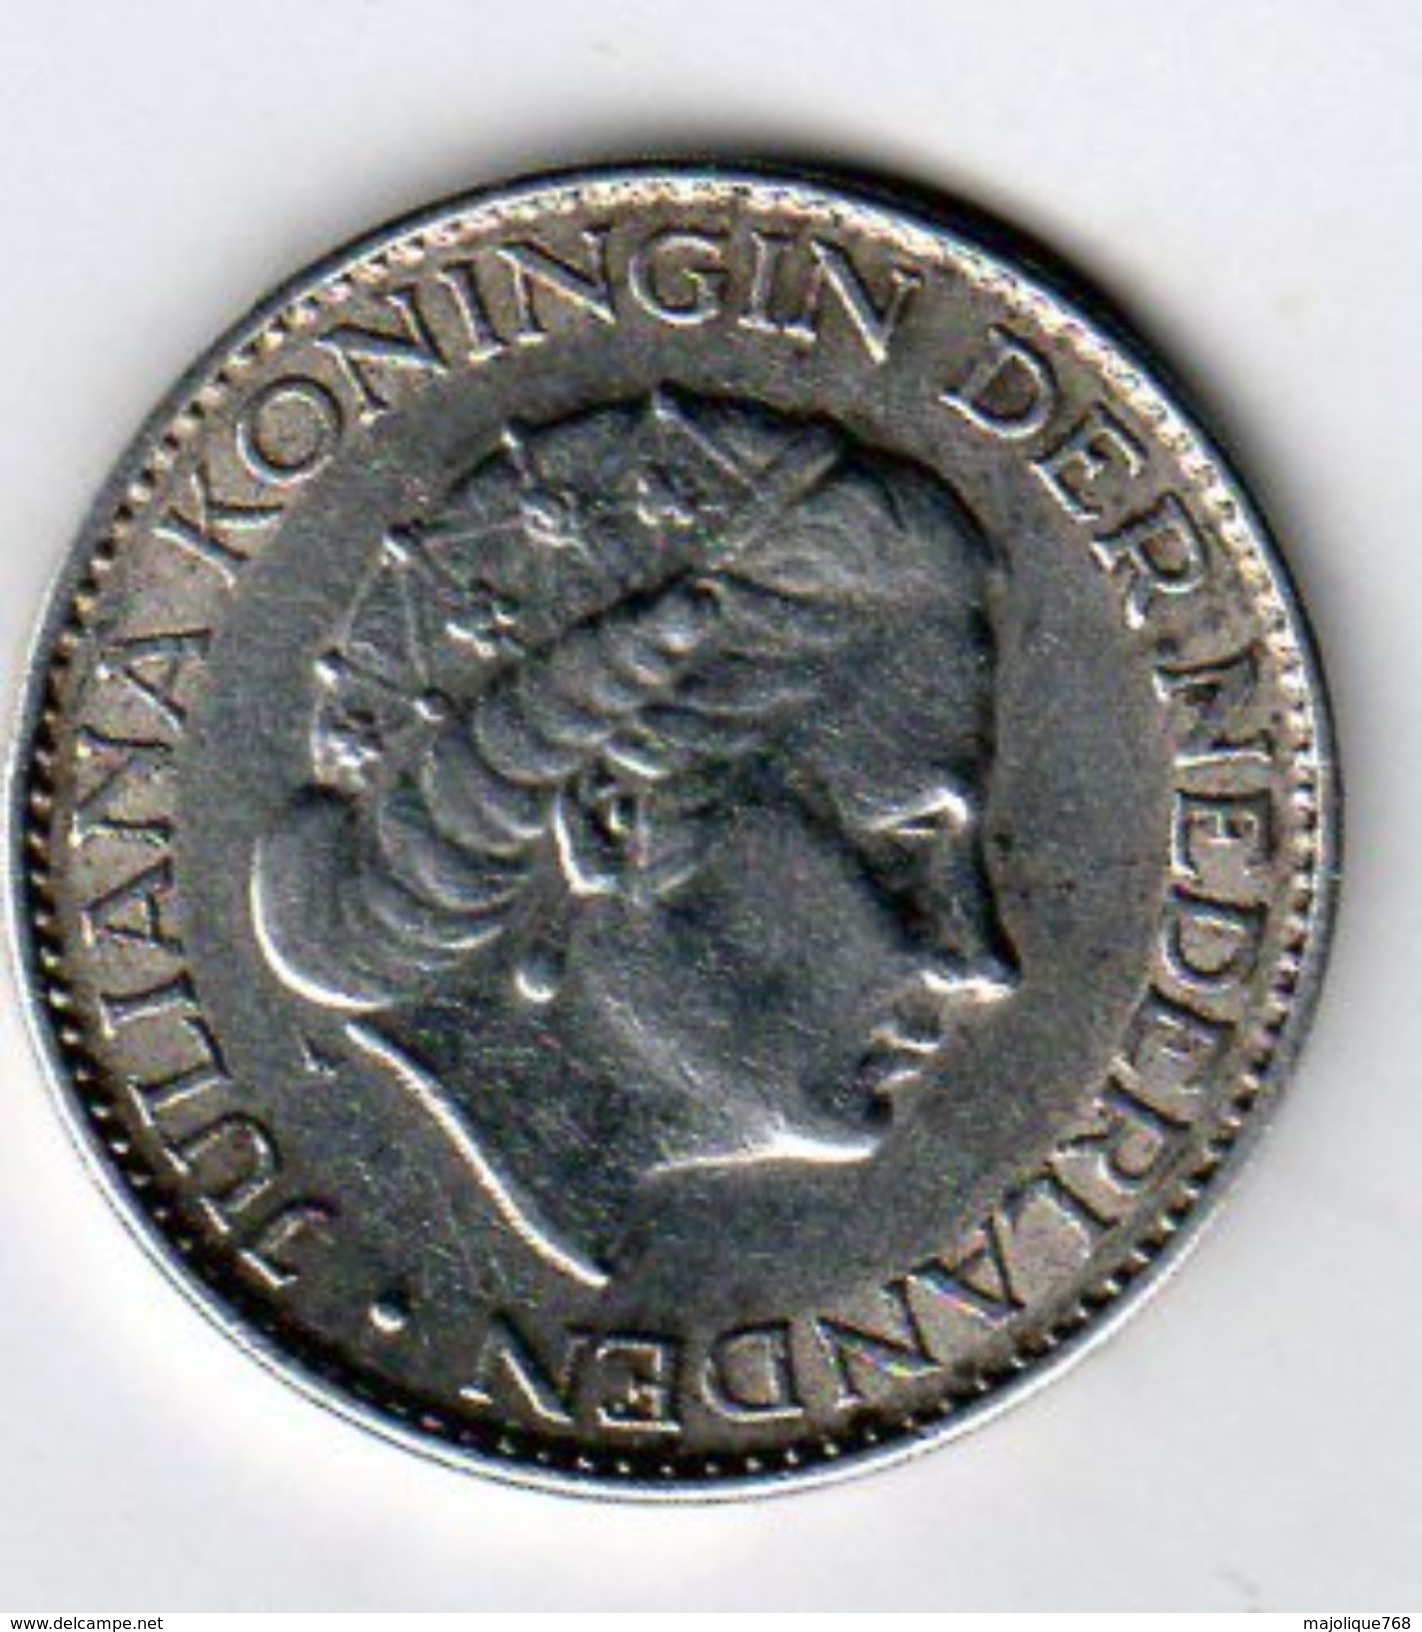 Pièce De Monnaie Du Pays-bas De 1 Gulden Argent 1963 En S U P - - Monete D'Oro E D'Argento